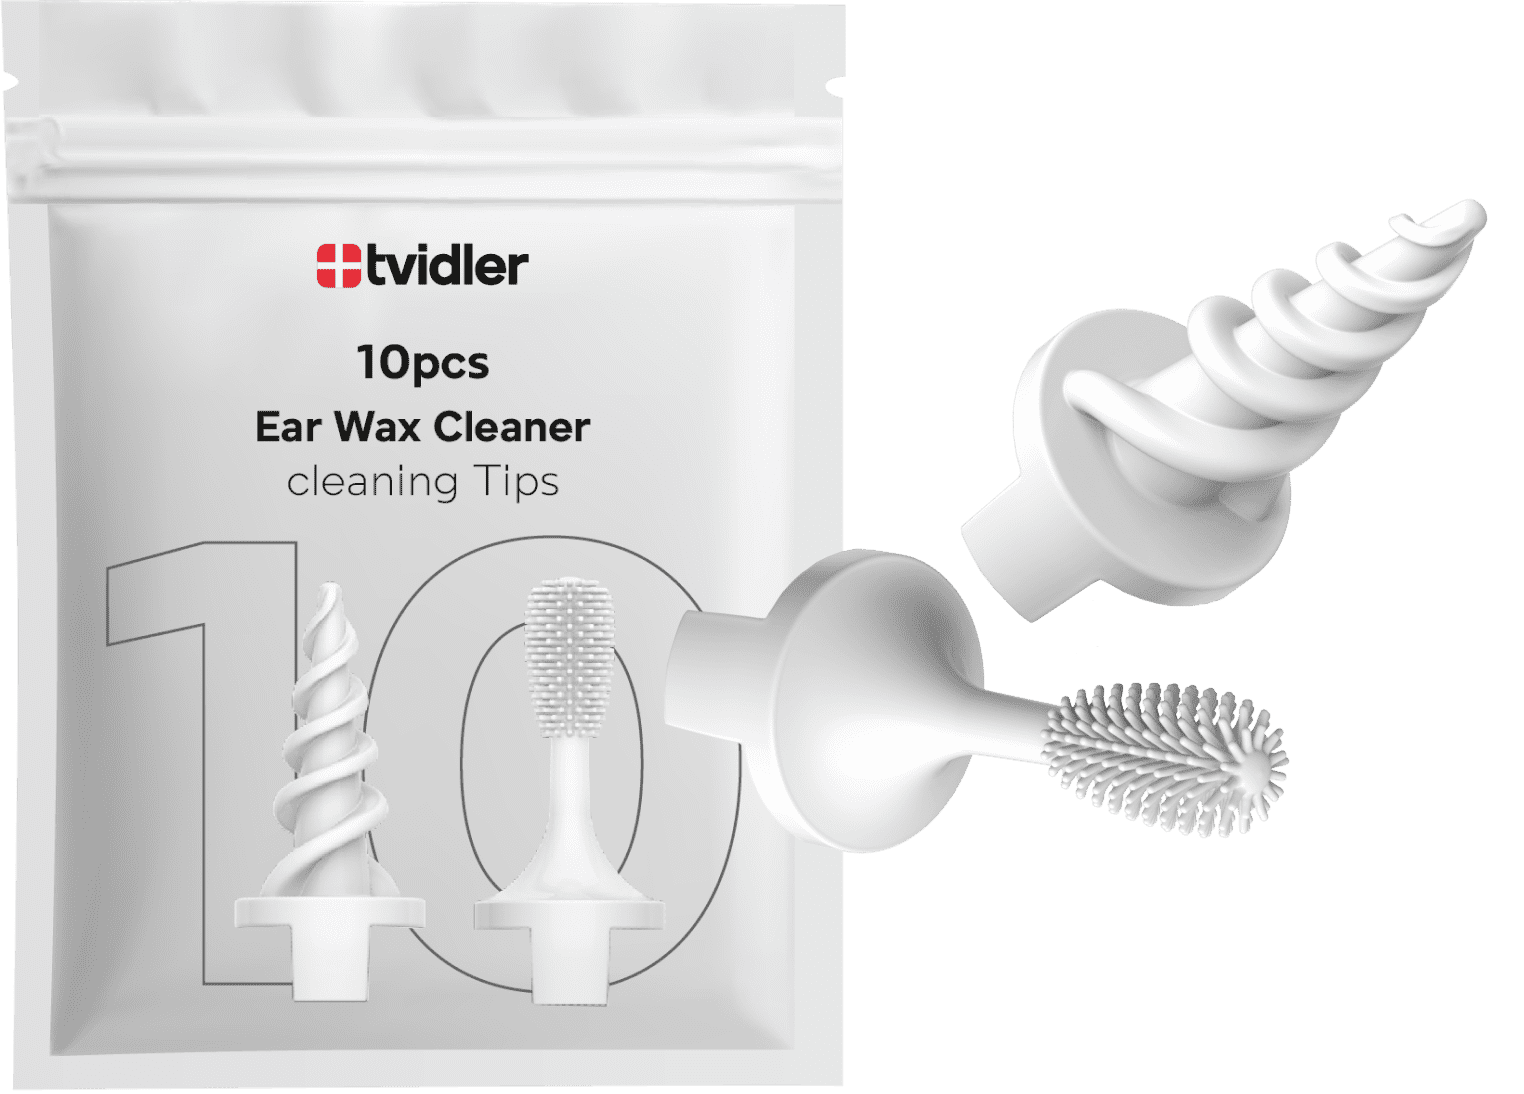 Extra Tvidler Handle - Assure que tout le monde dans la famille a un outil  de nettoyage des oreilles sûr, fiable et efficace. Compatible avec toutes  les têtes de rechange en spirale